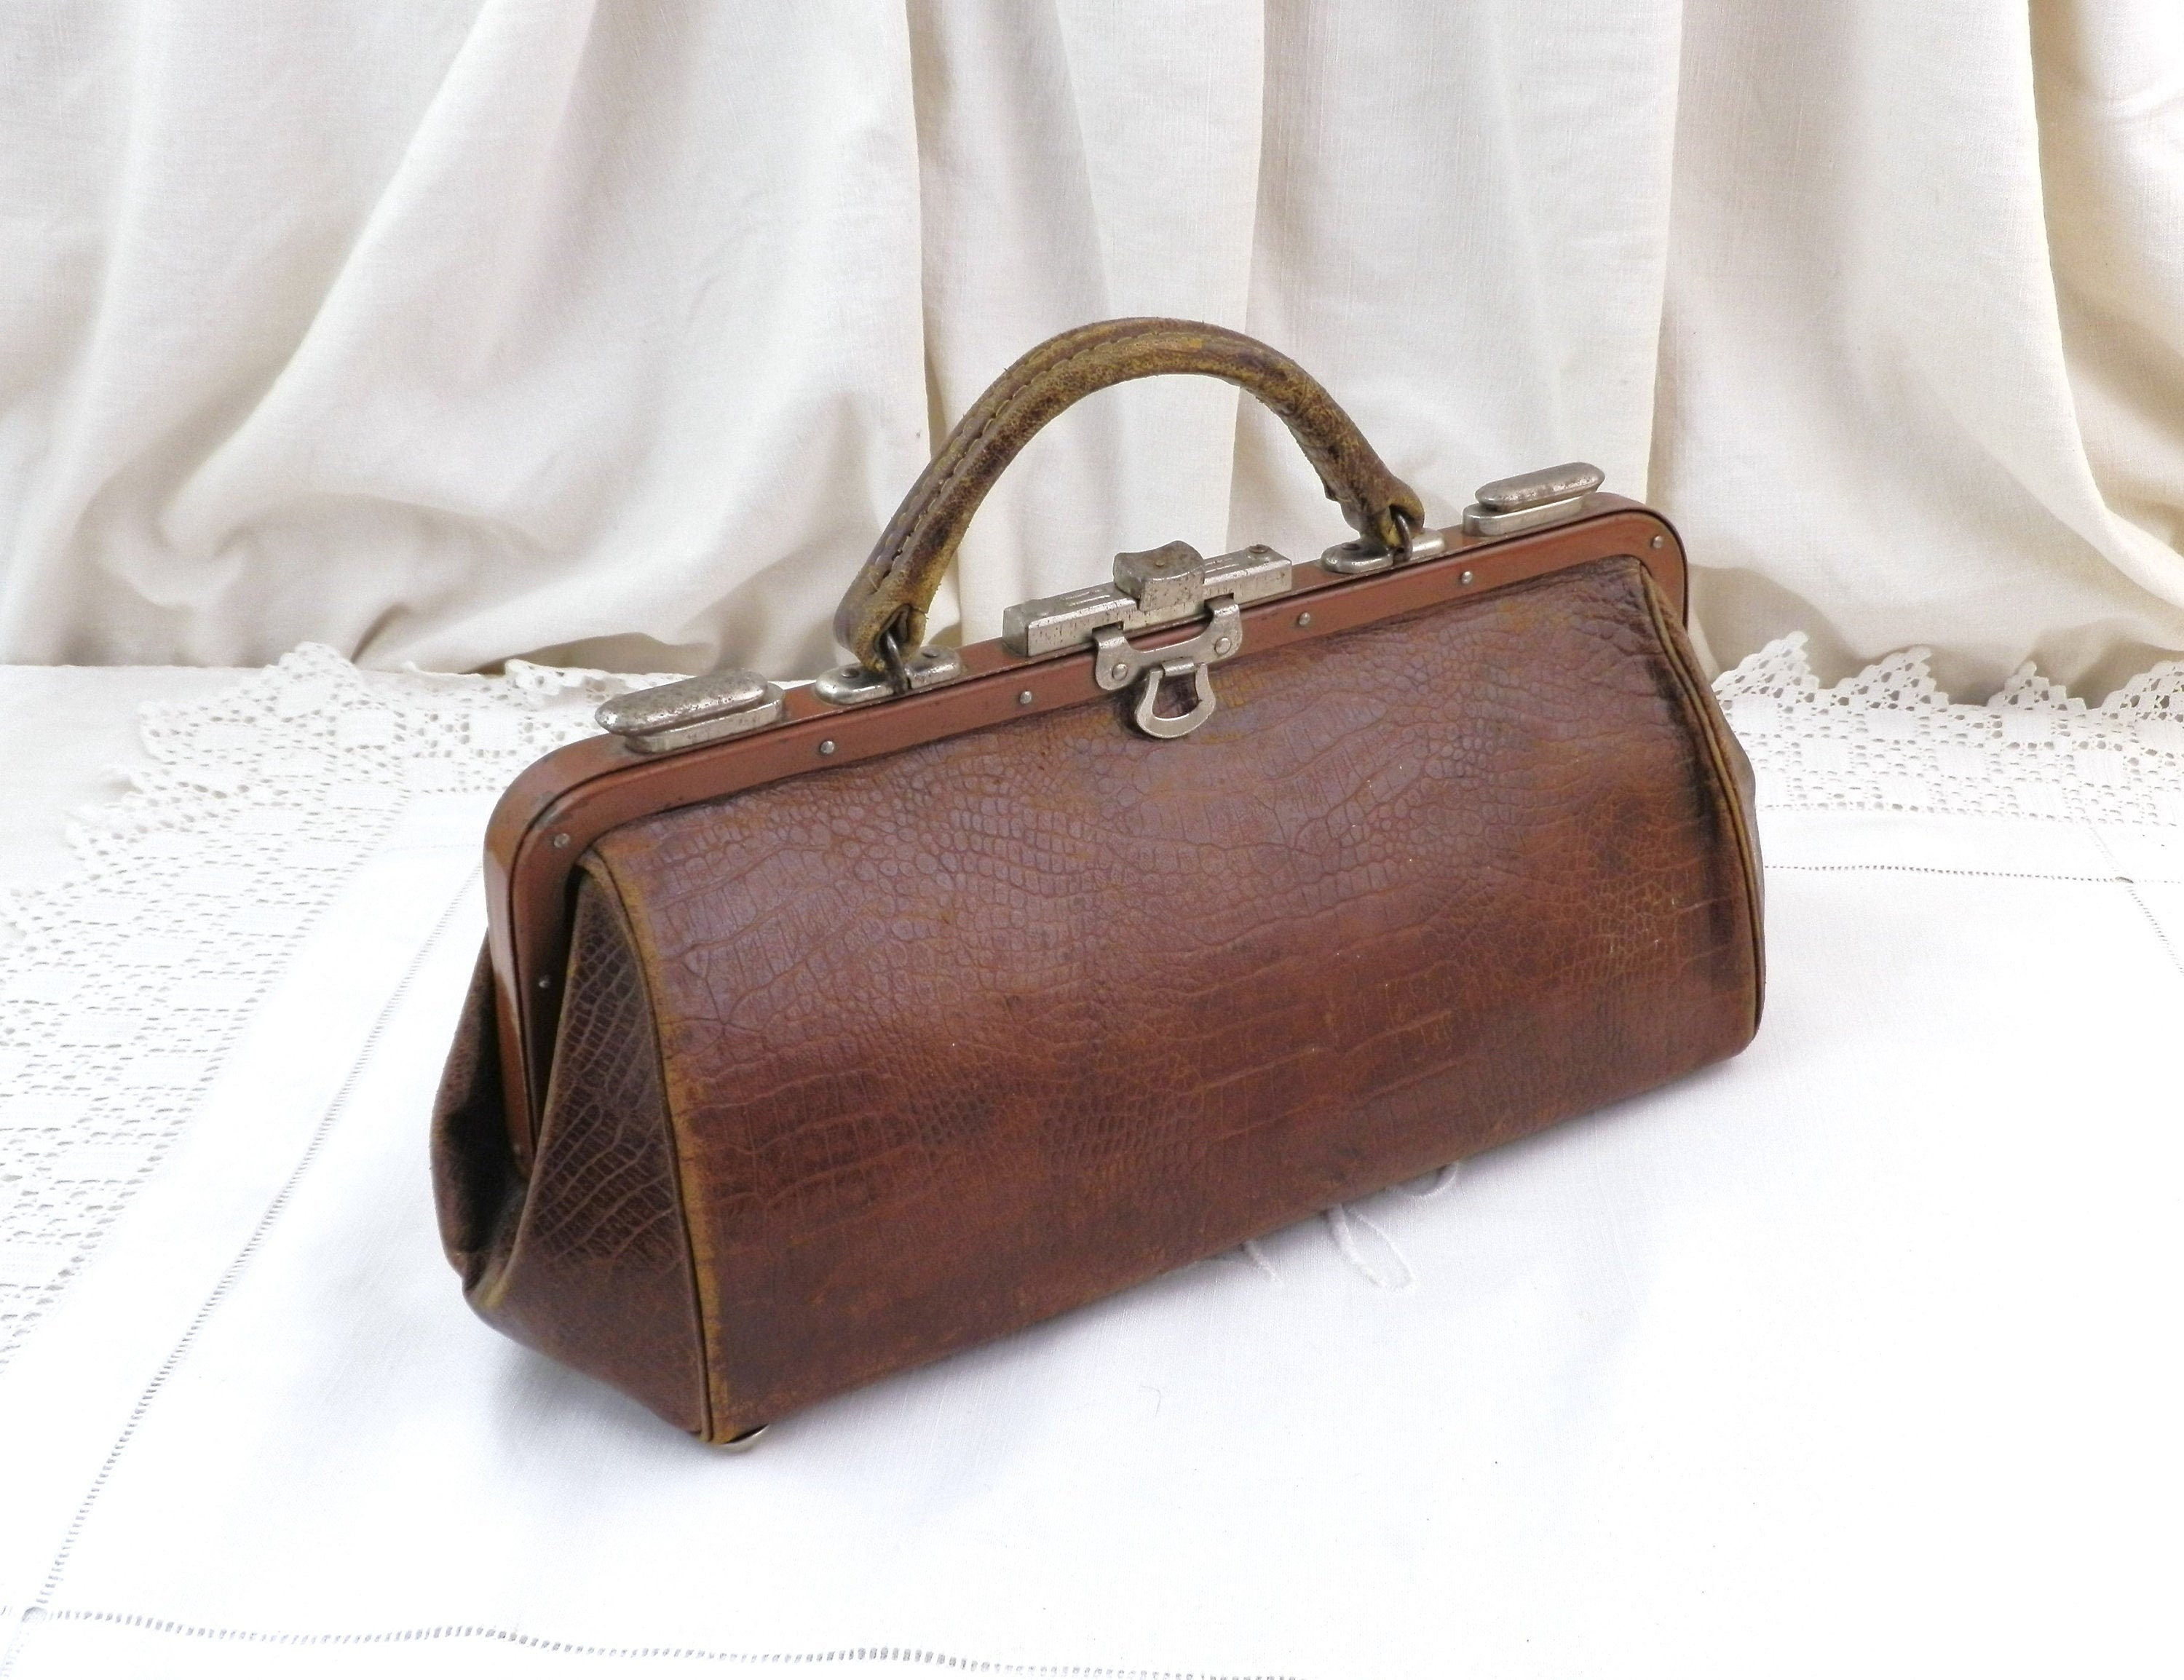 antique gladstone bag